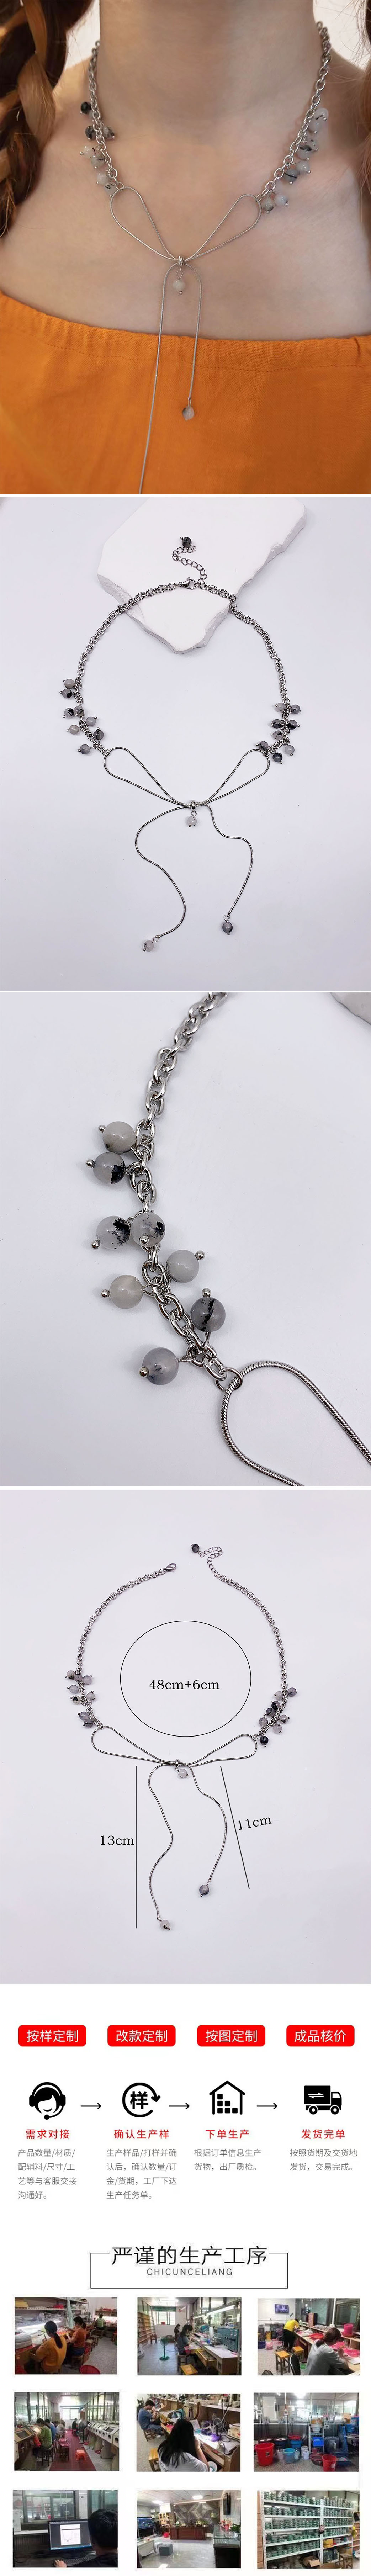 法式高级设计斑点球水晶串珠蝴蝶结绑带锁骨链 长项链 颈链个性时尚详情1